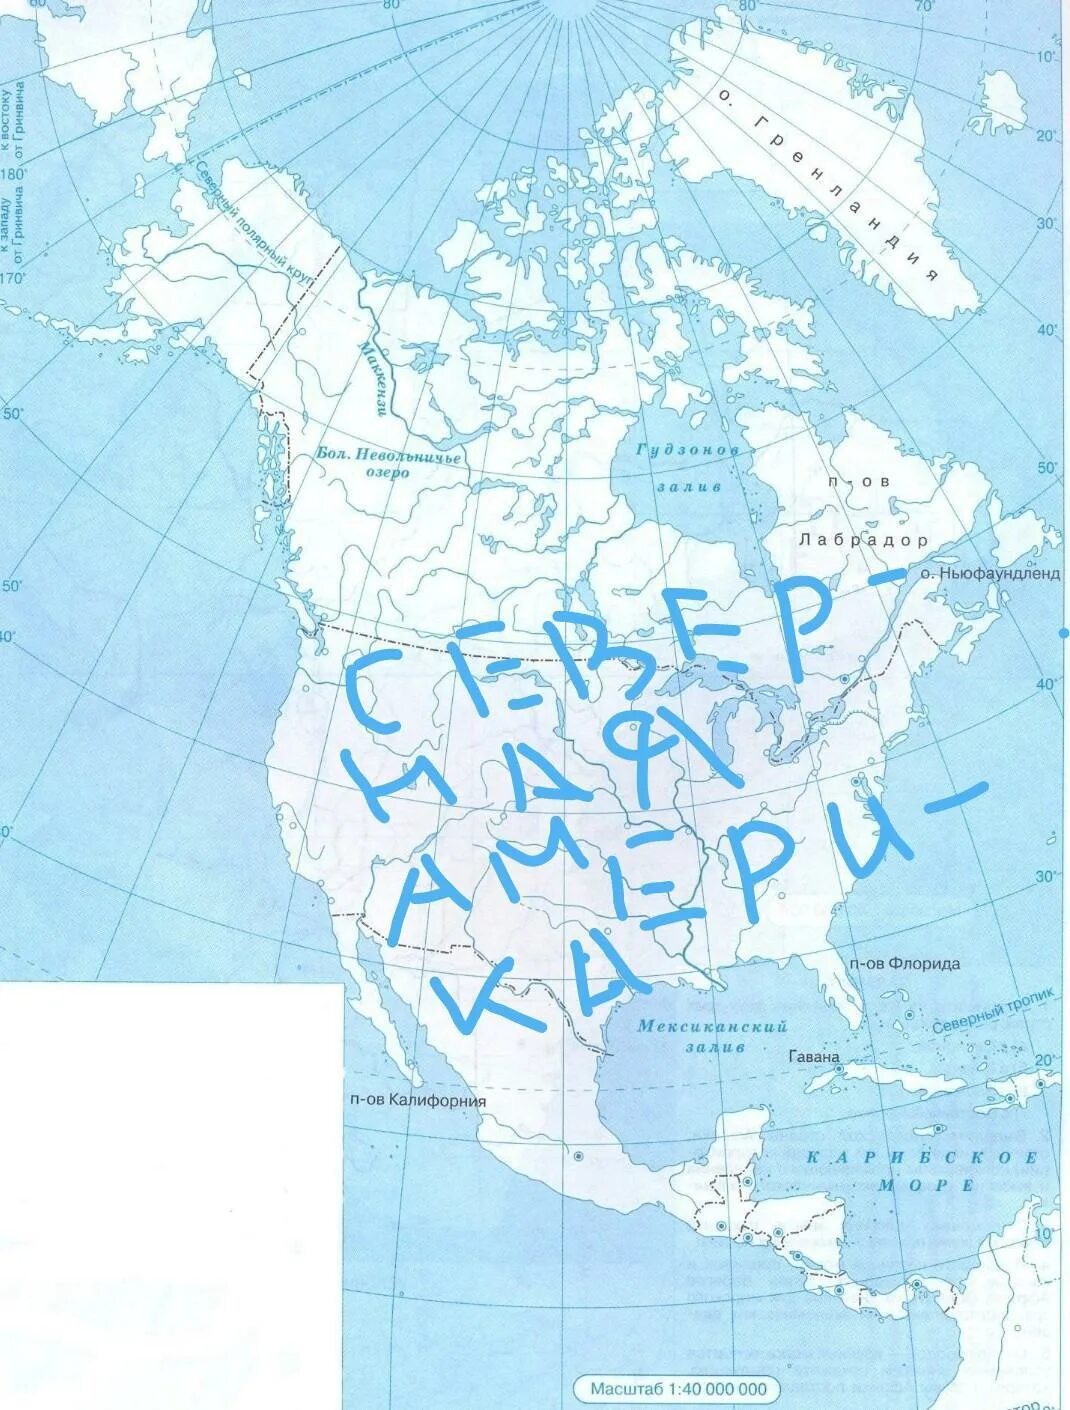 На карте отмечены 13. Контурная карта. Границы Северной Америки на контурной карте. Контурная карта Северной Америки. Реки Северной Америки на контурной карте.